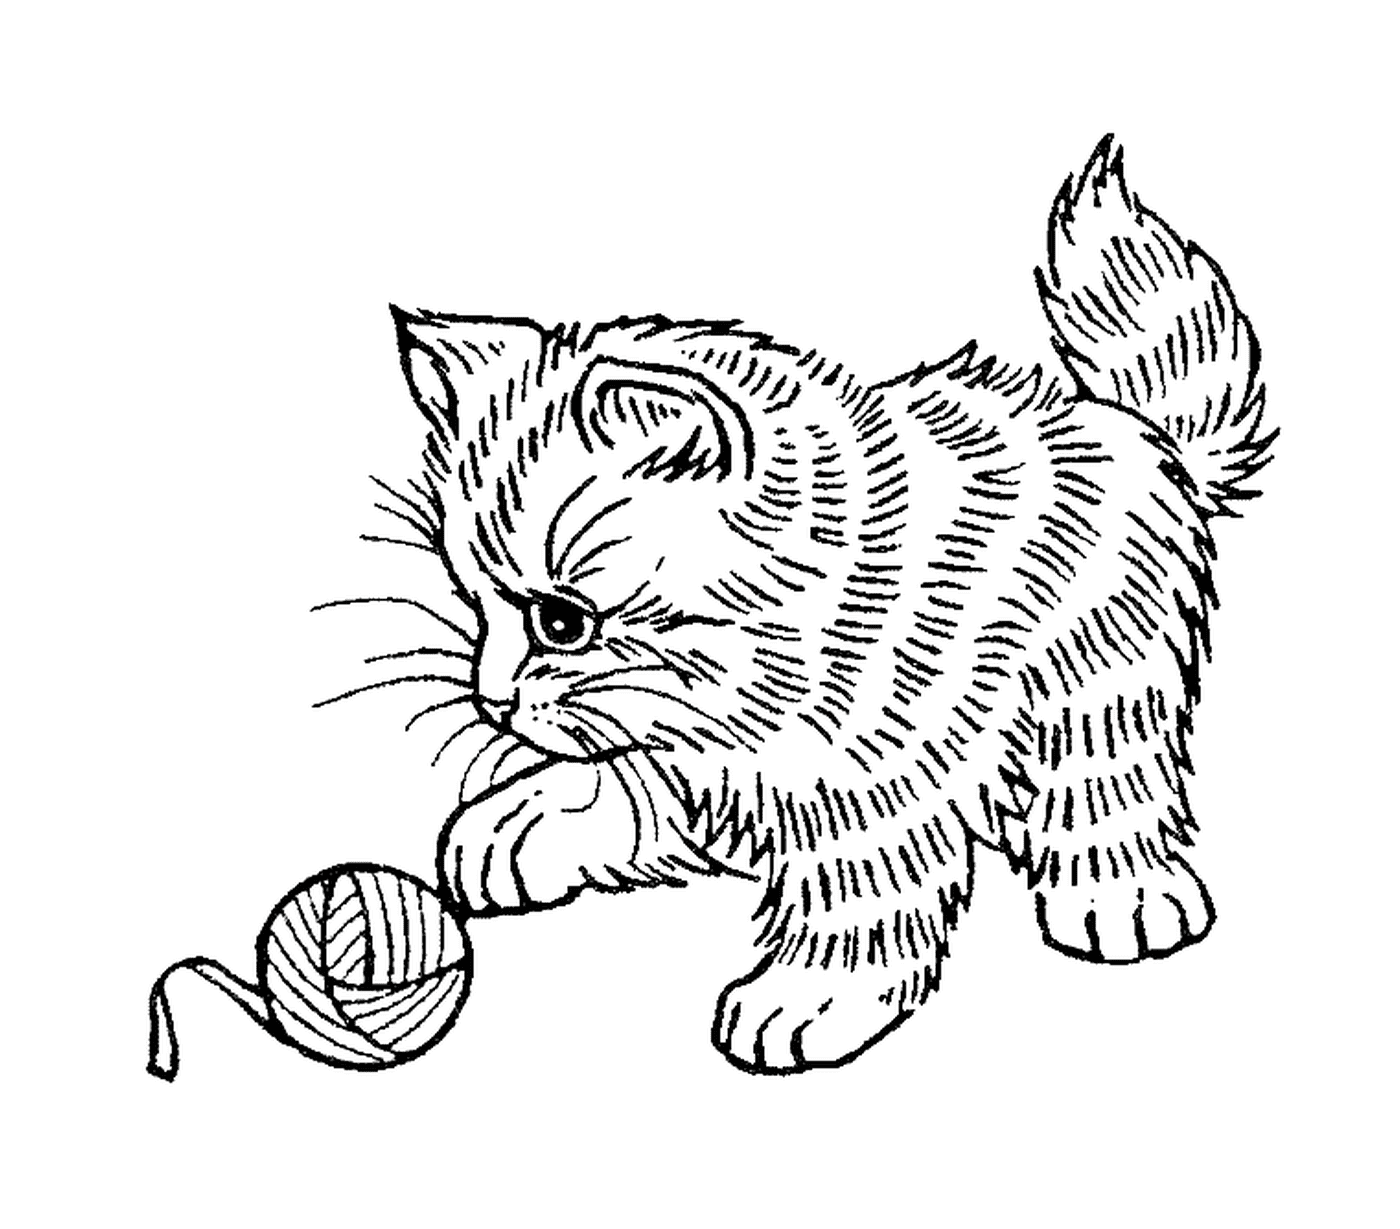  Un bel gatto che gioca con una palla di lana 